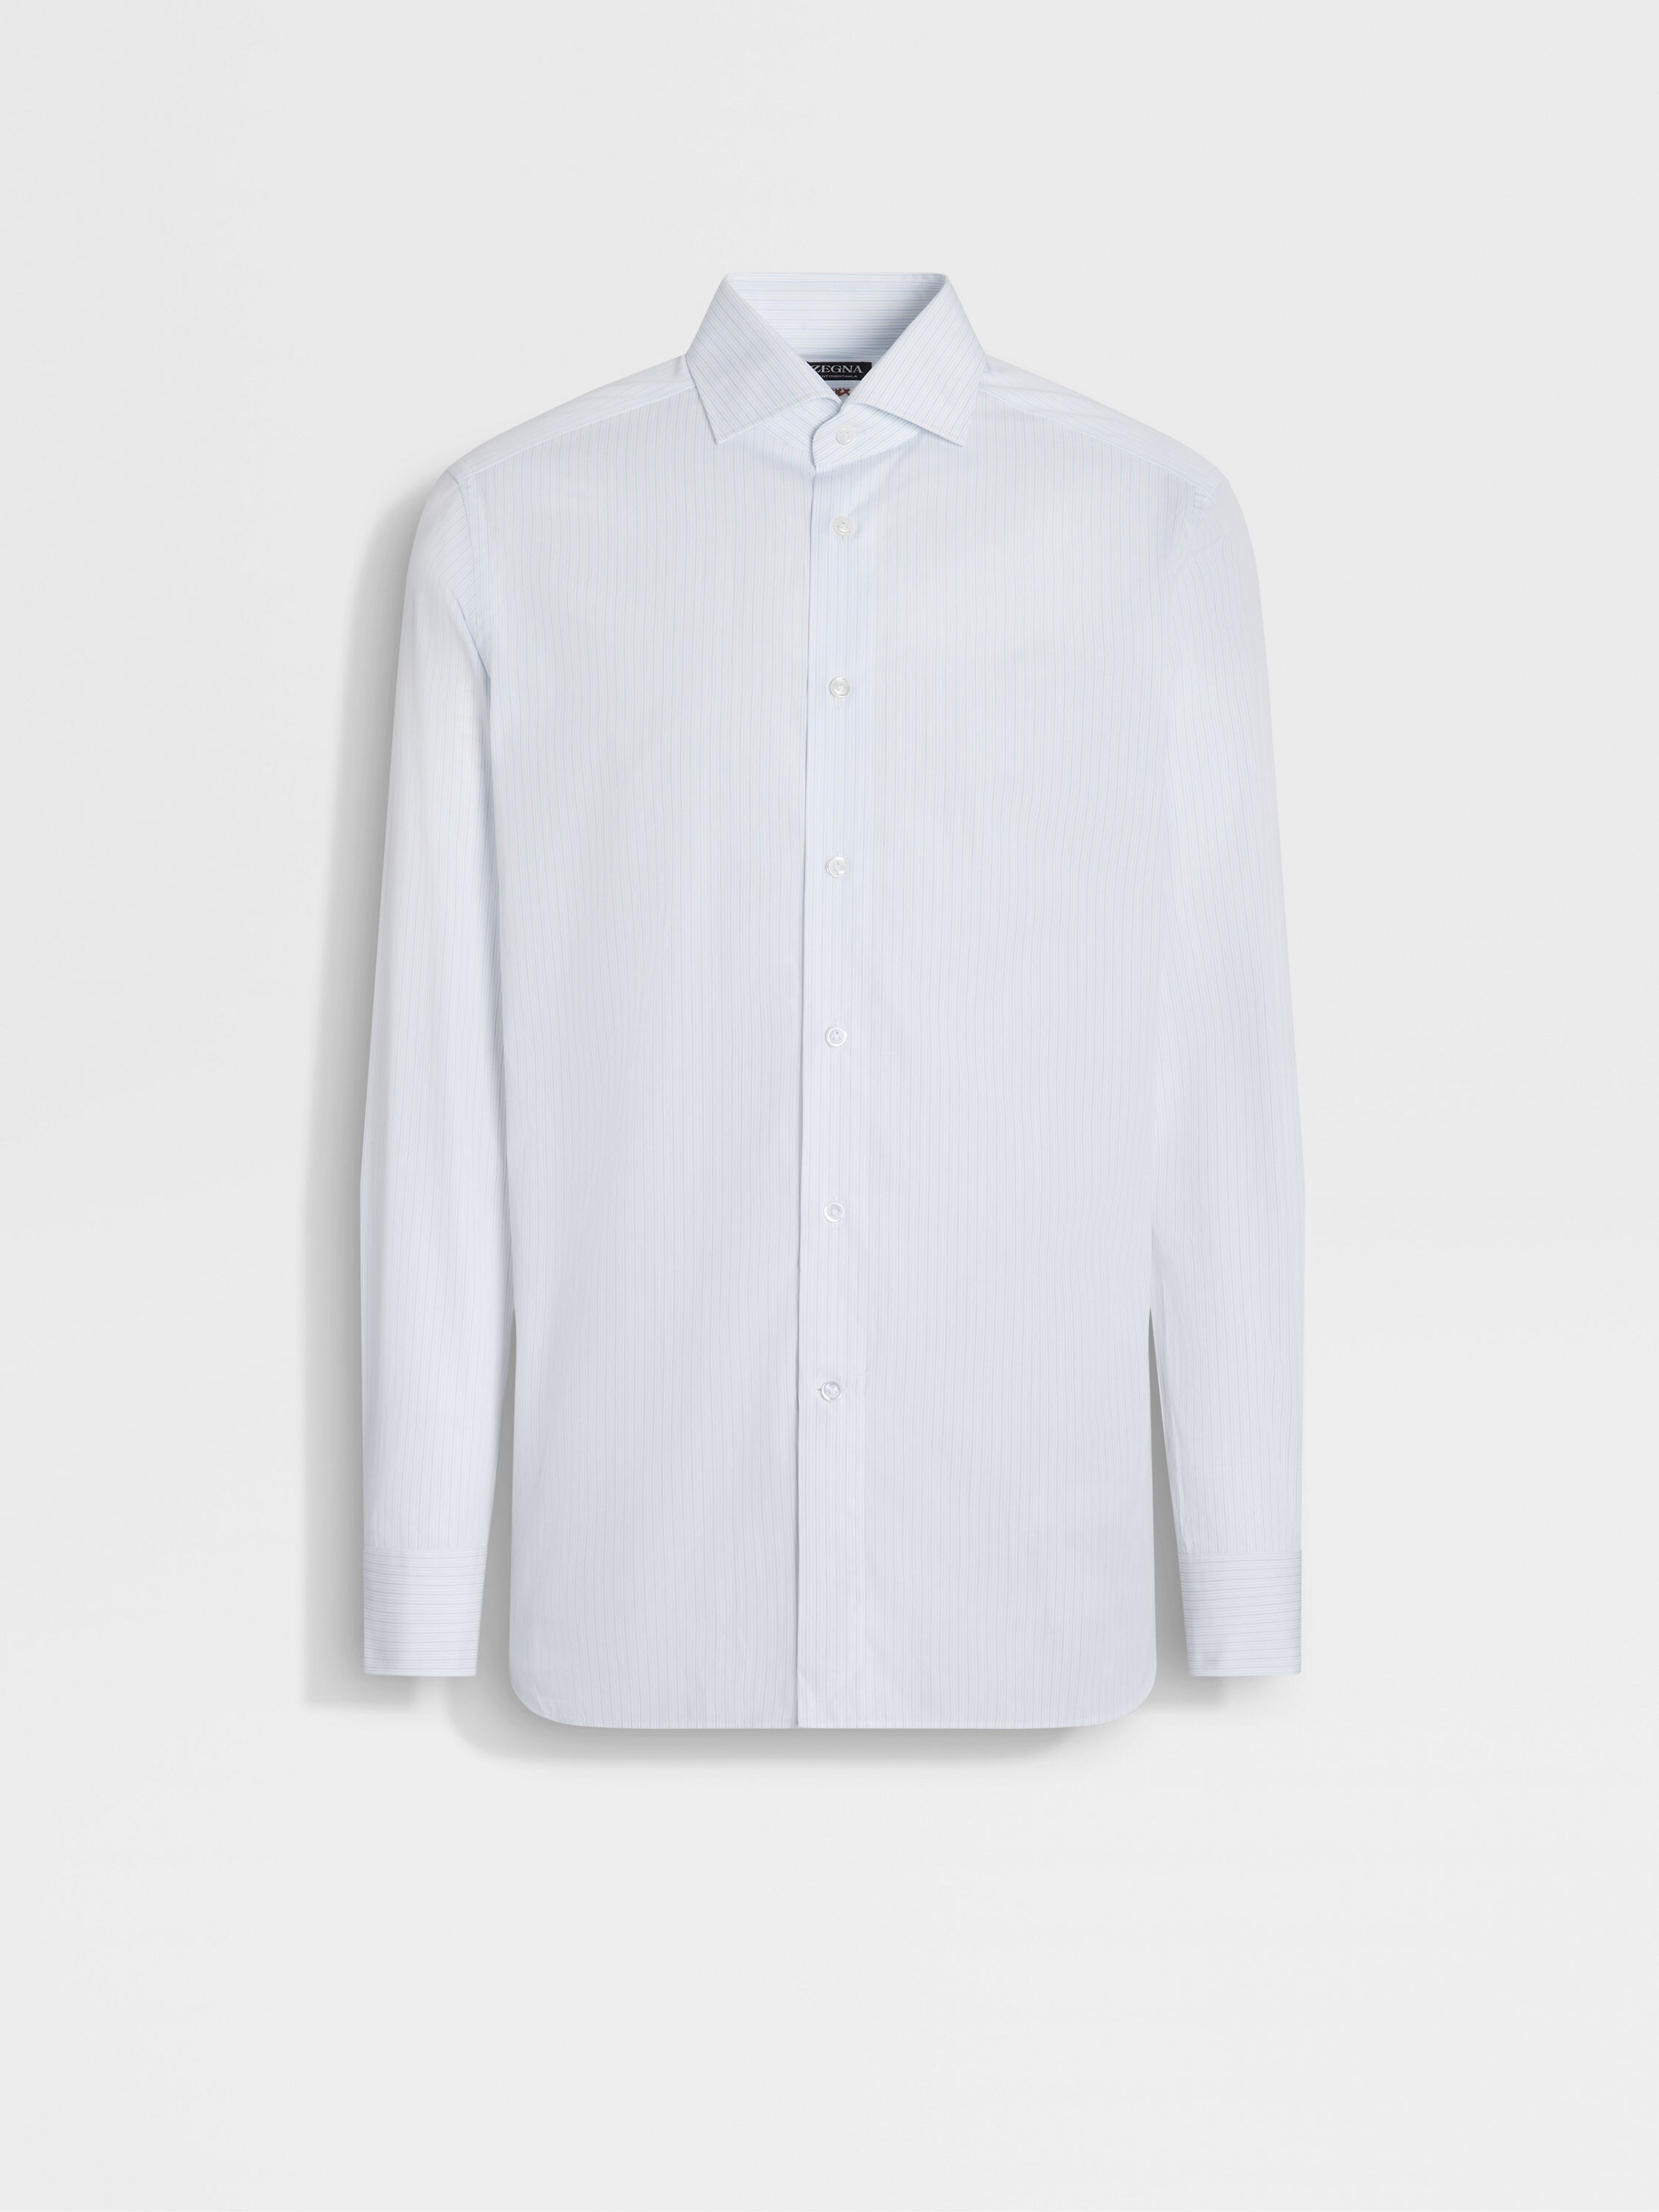 浅蓝色配白色细条纹 Centoventimila 棉质衬衫